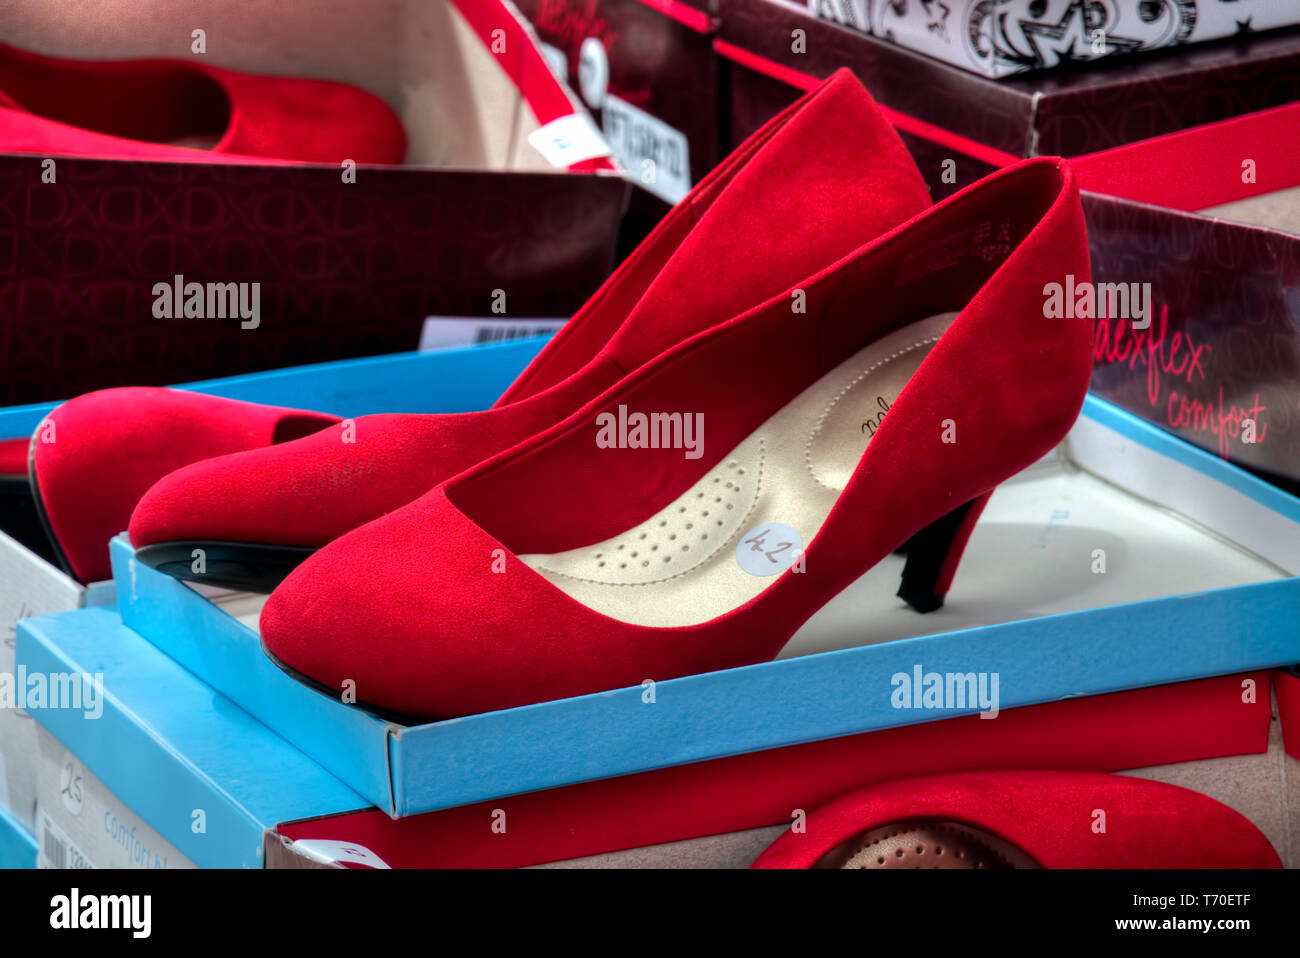 Tacchi rossi immagini e fotografie stock ad alta risoluzione - Alamy